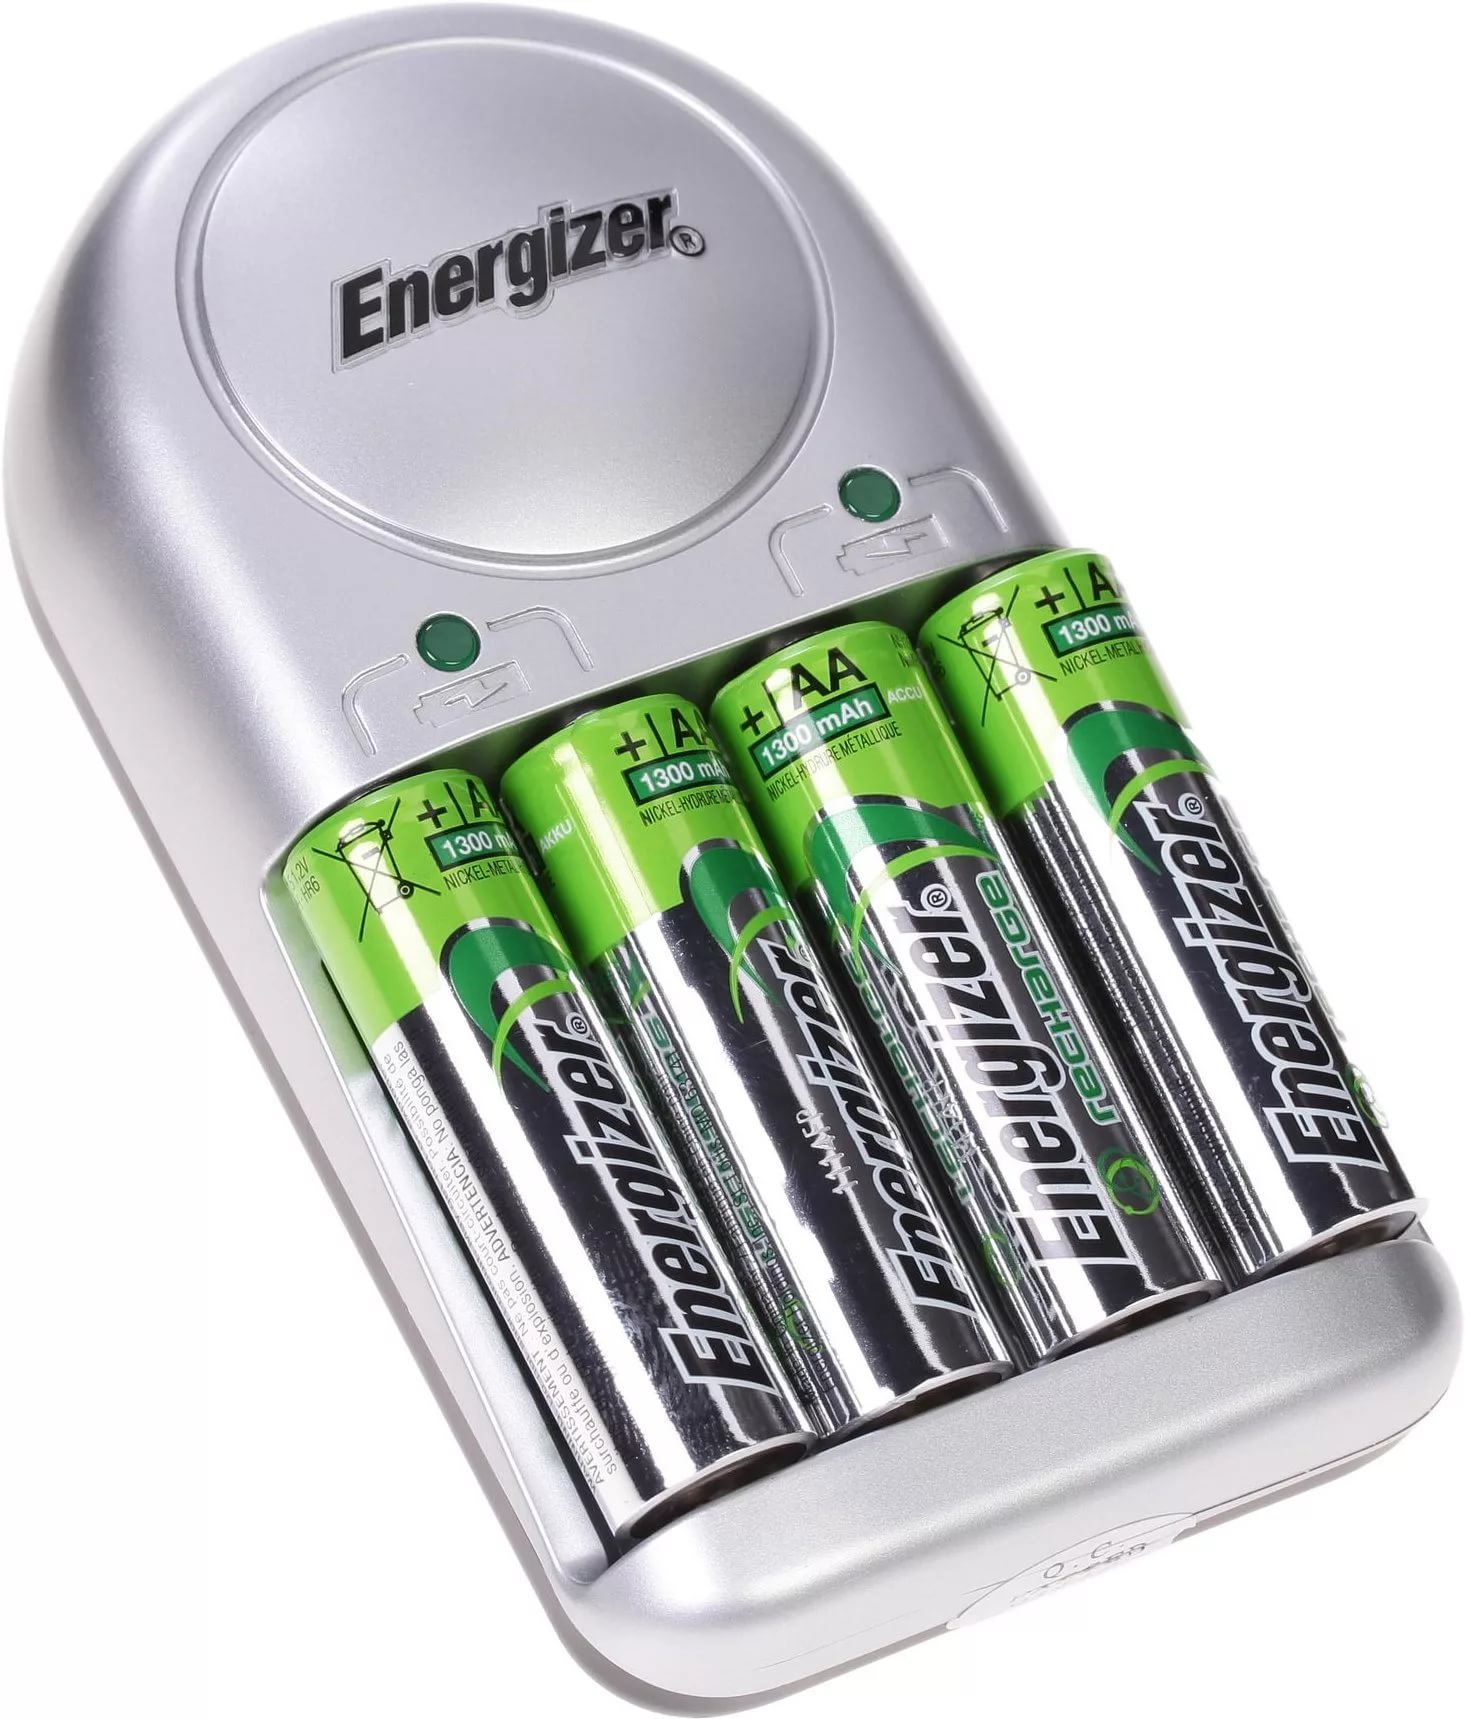 Зарядка батарея аккумулятор. Аккумуляторная зарядка для пальчиковых батареек 700. Батарейки аккумуляторные ni-MH GP AAA. Зарядка для батареек аккумуляторов Energizer. Зарядное устройство Energizer ENR Base Charger.